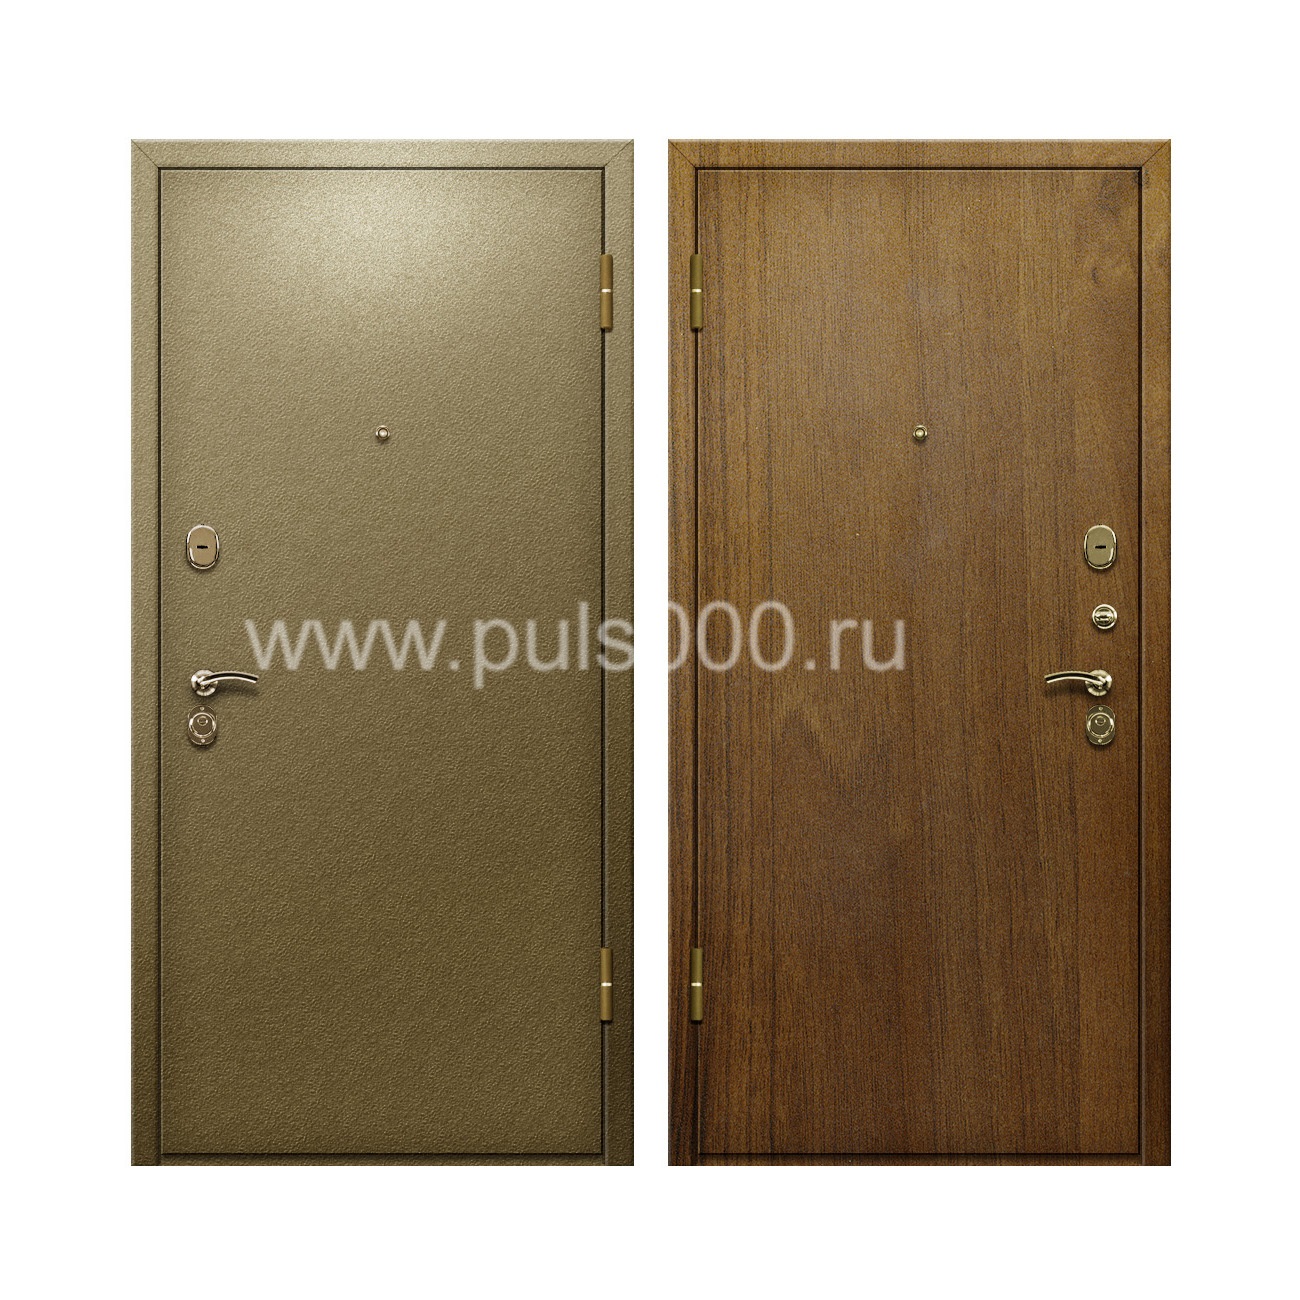 Входная дверь порошковое напыление и ламинат PR-62 , цена 20 000  руб.